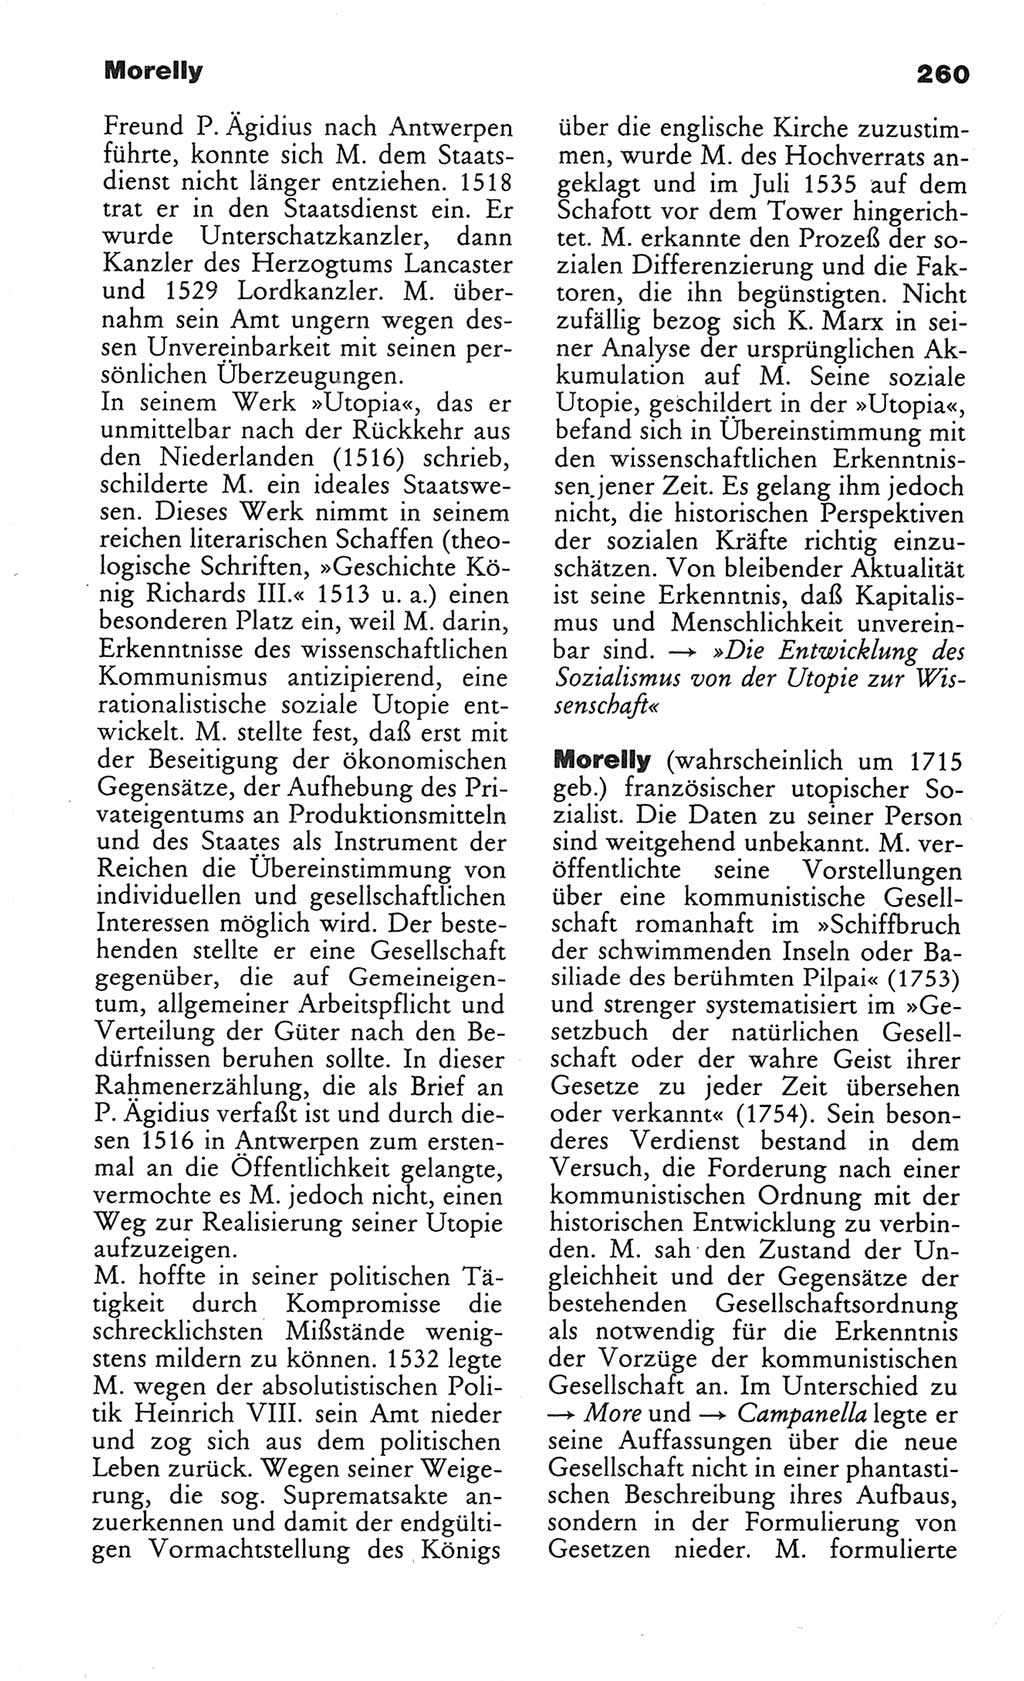 Wörterbuch des wissenschaftlichen Kommunismus [Deutsche Demokratische Republik (DDR)] 1984, Seite 260 (Wb. wiss. Komm. DDR 1984, S. 260)